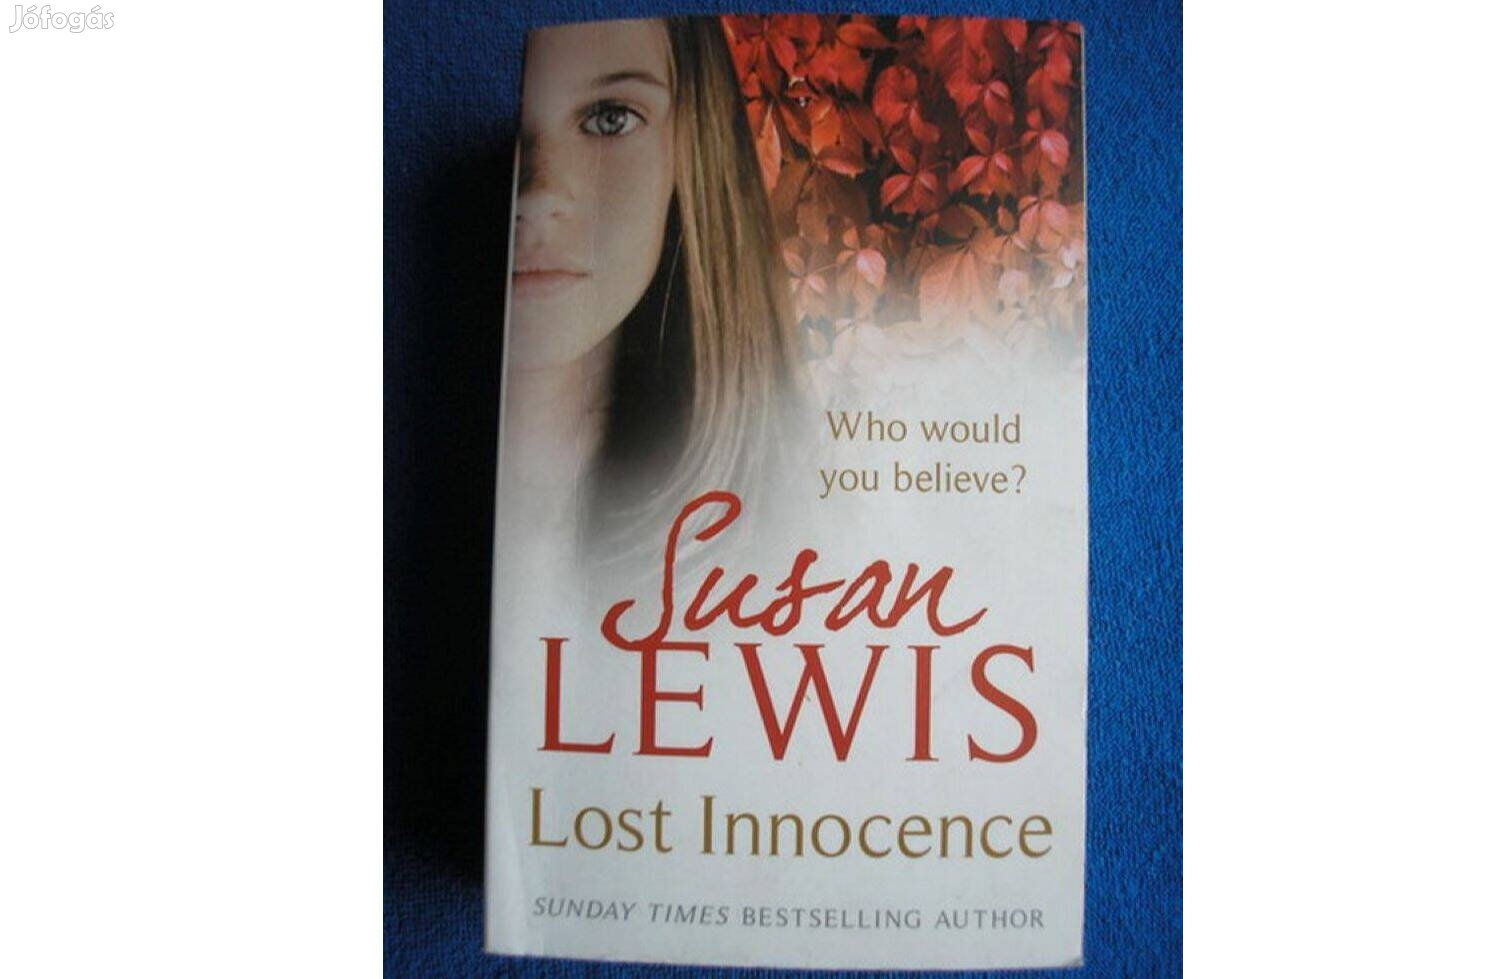 Susan Lewis: Lost Innocence